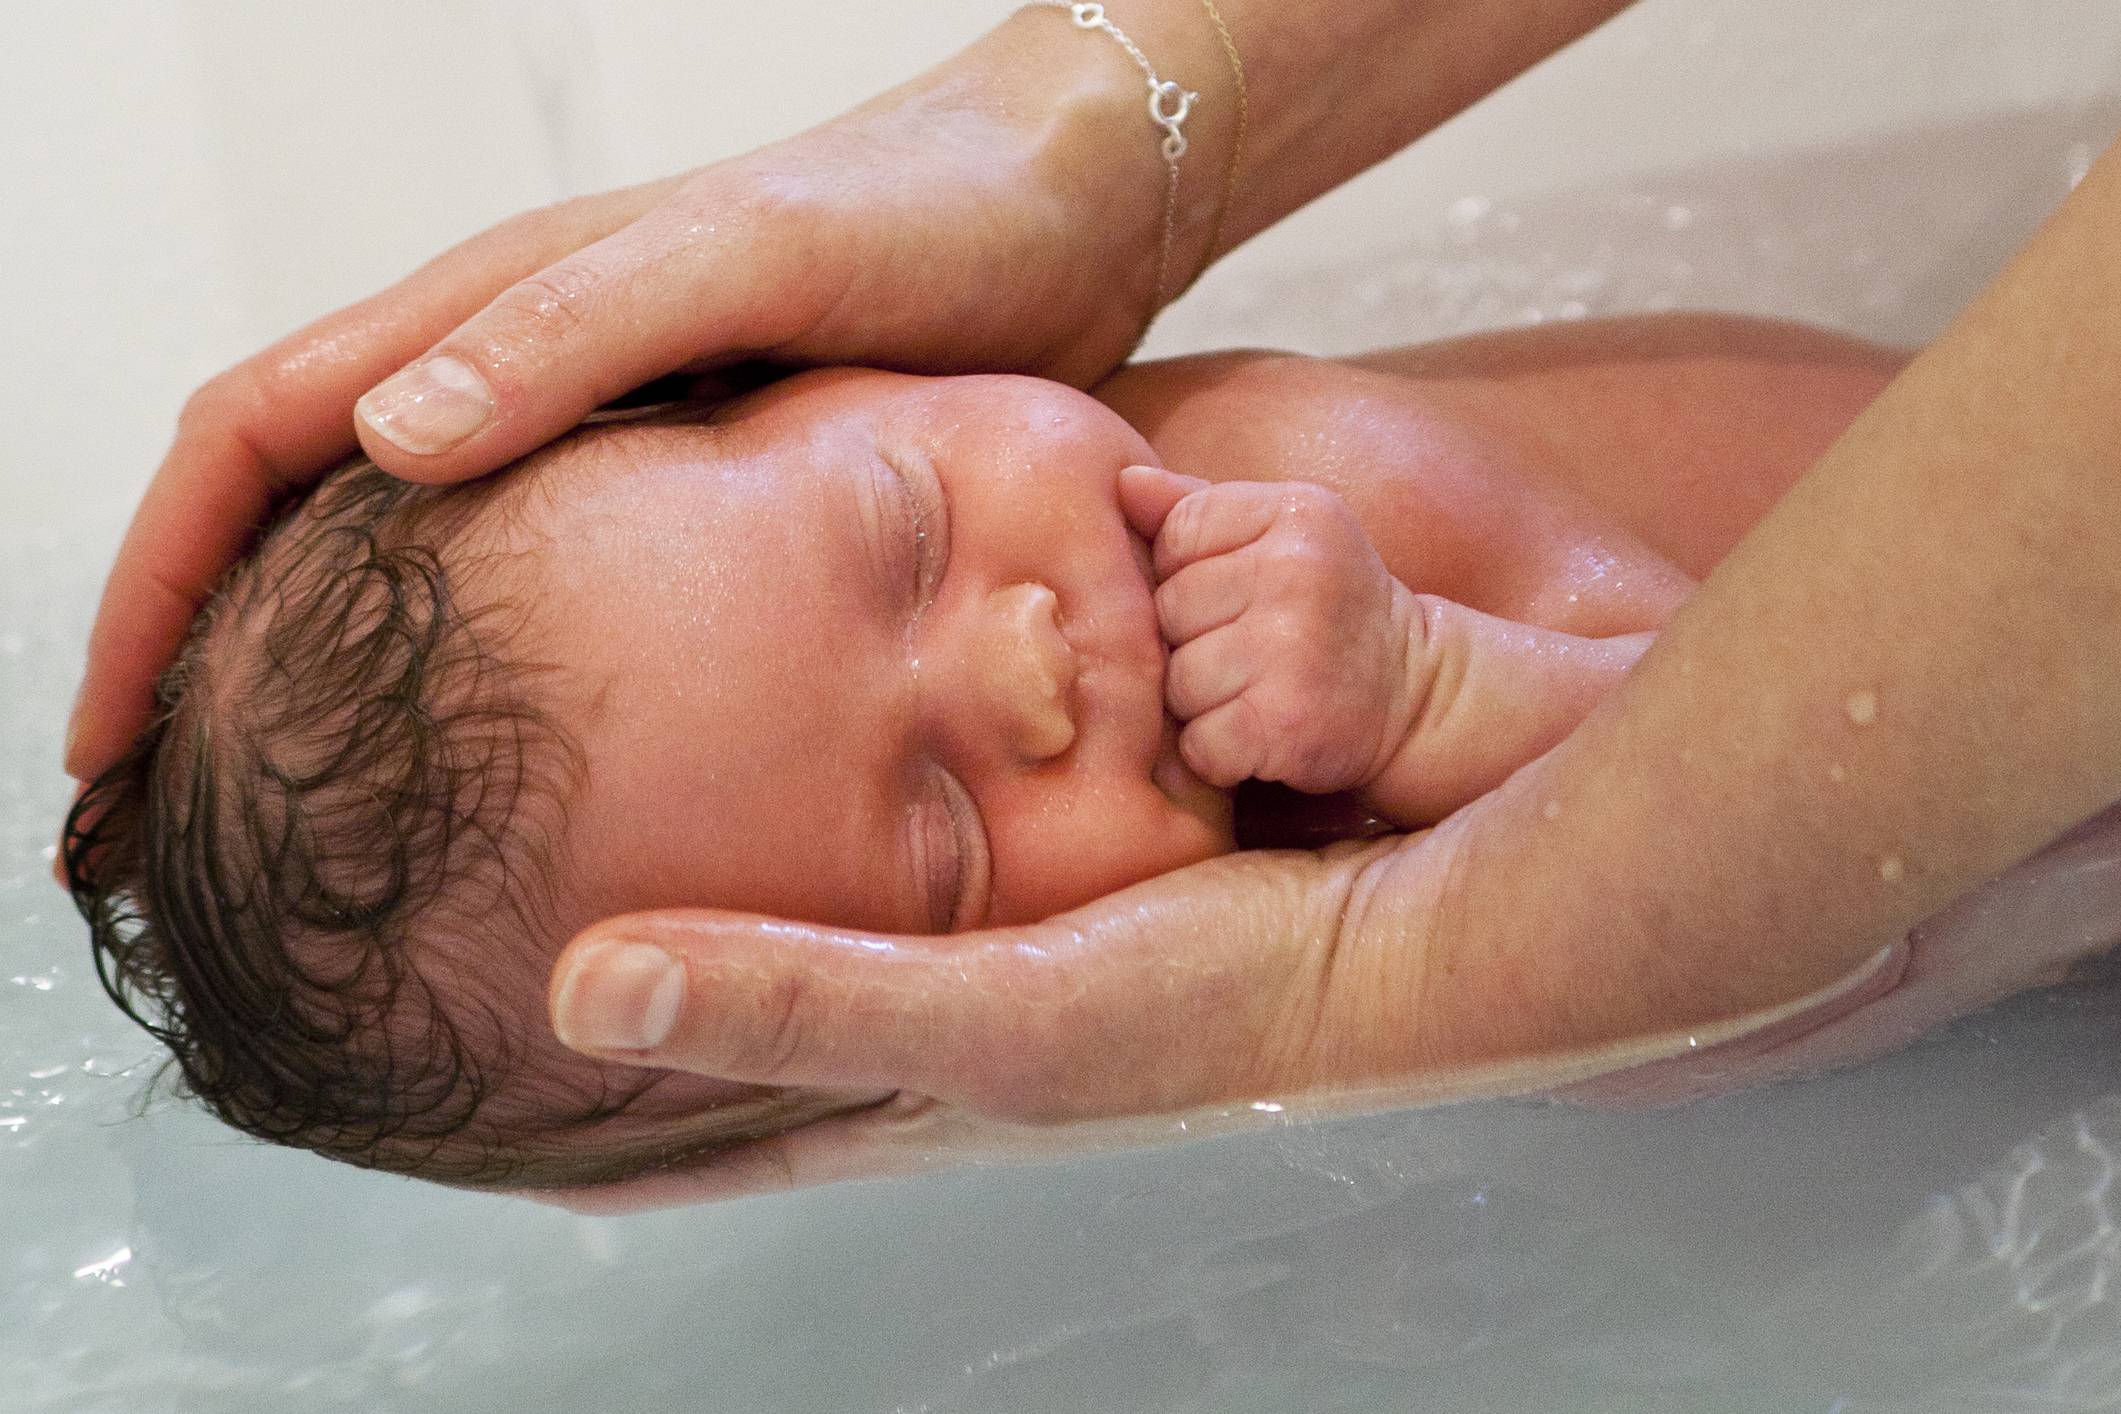 Уход за новорожденным мальчиком в первый месяц жизни: как правильно купать, видео